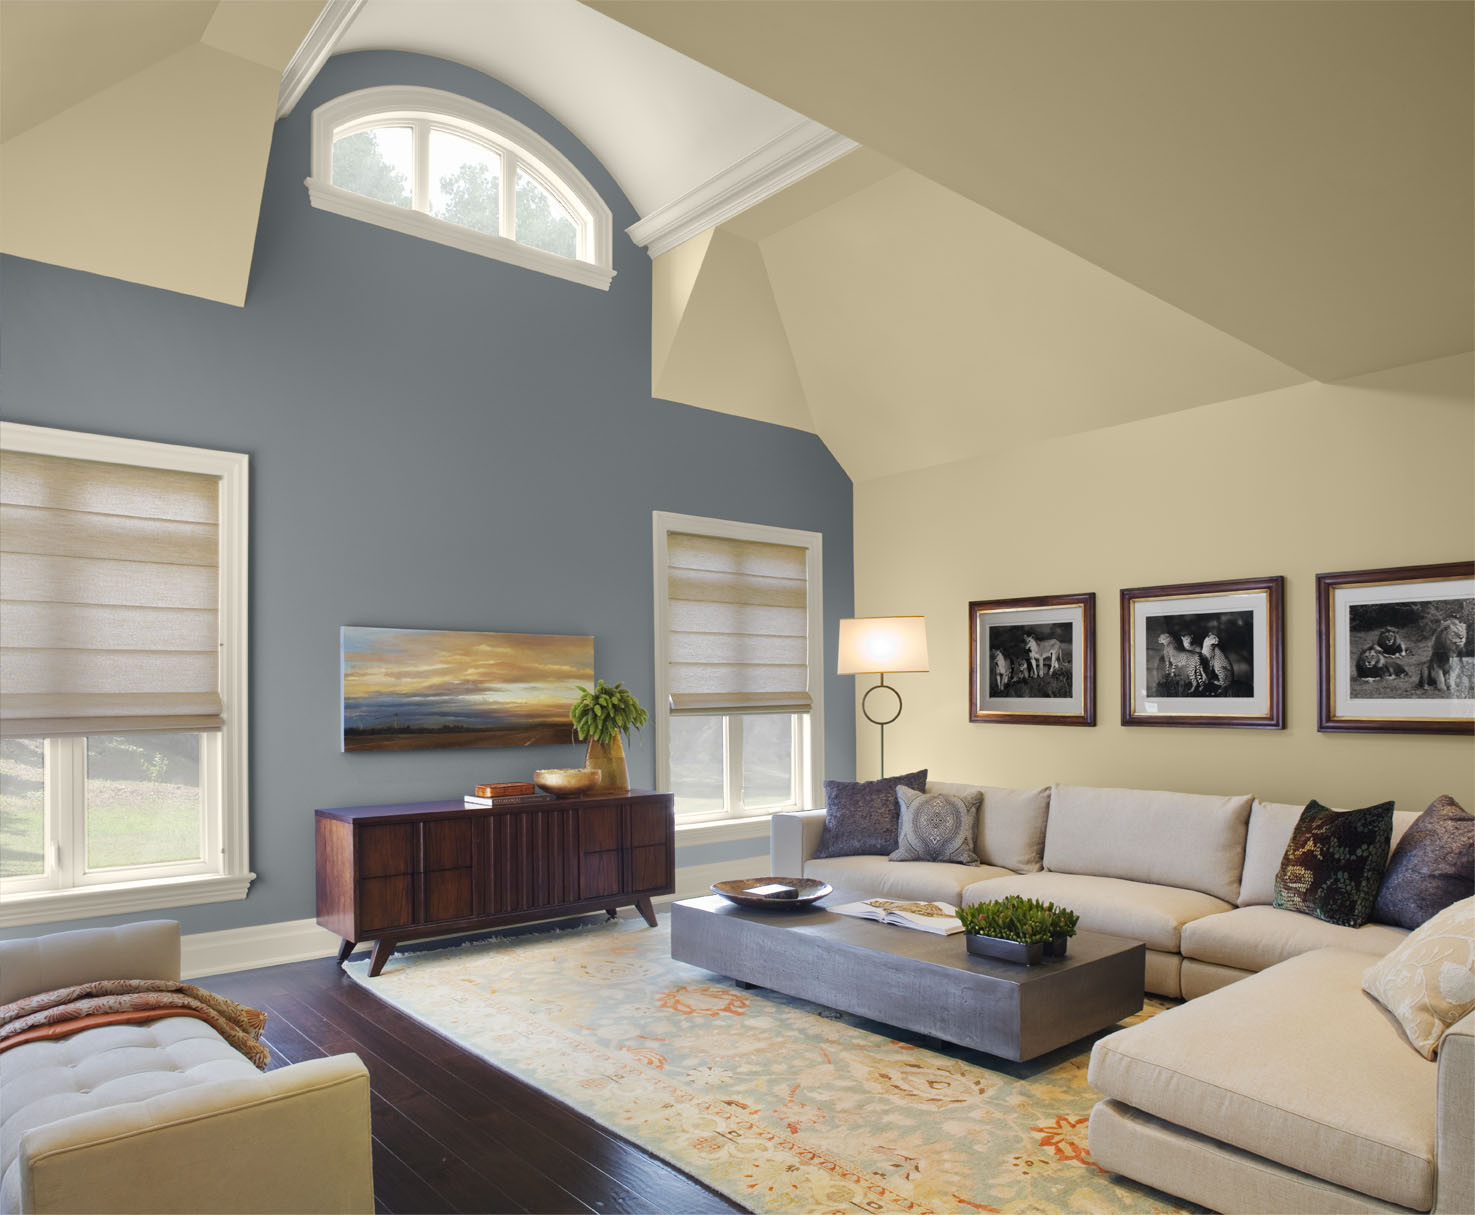 Living Room Paint Scheme Best Of 30 Excellent Living Room Paint Color Ideas Slodive